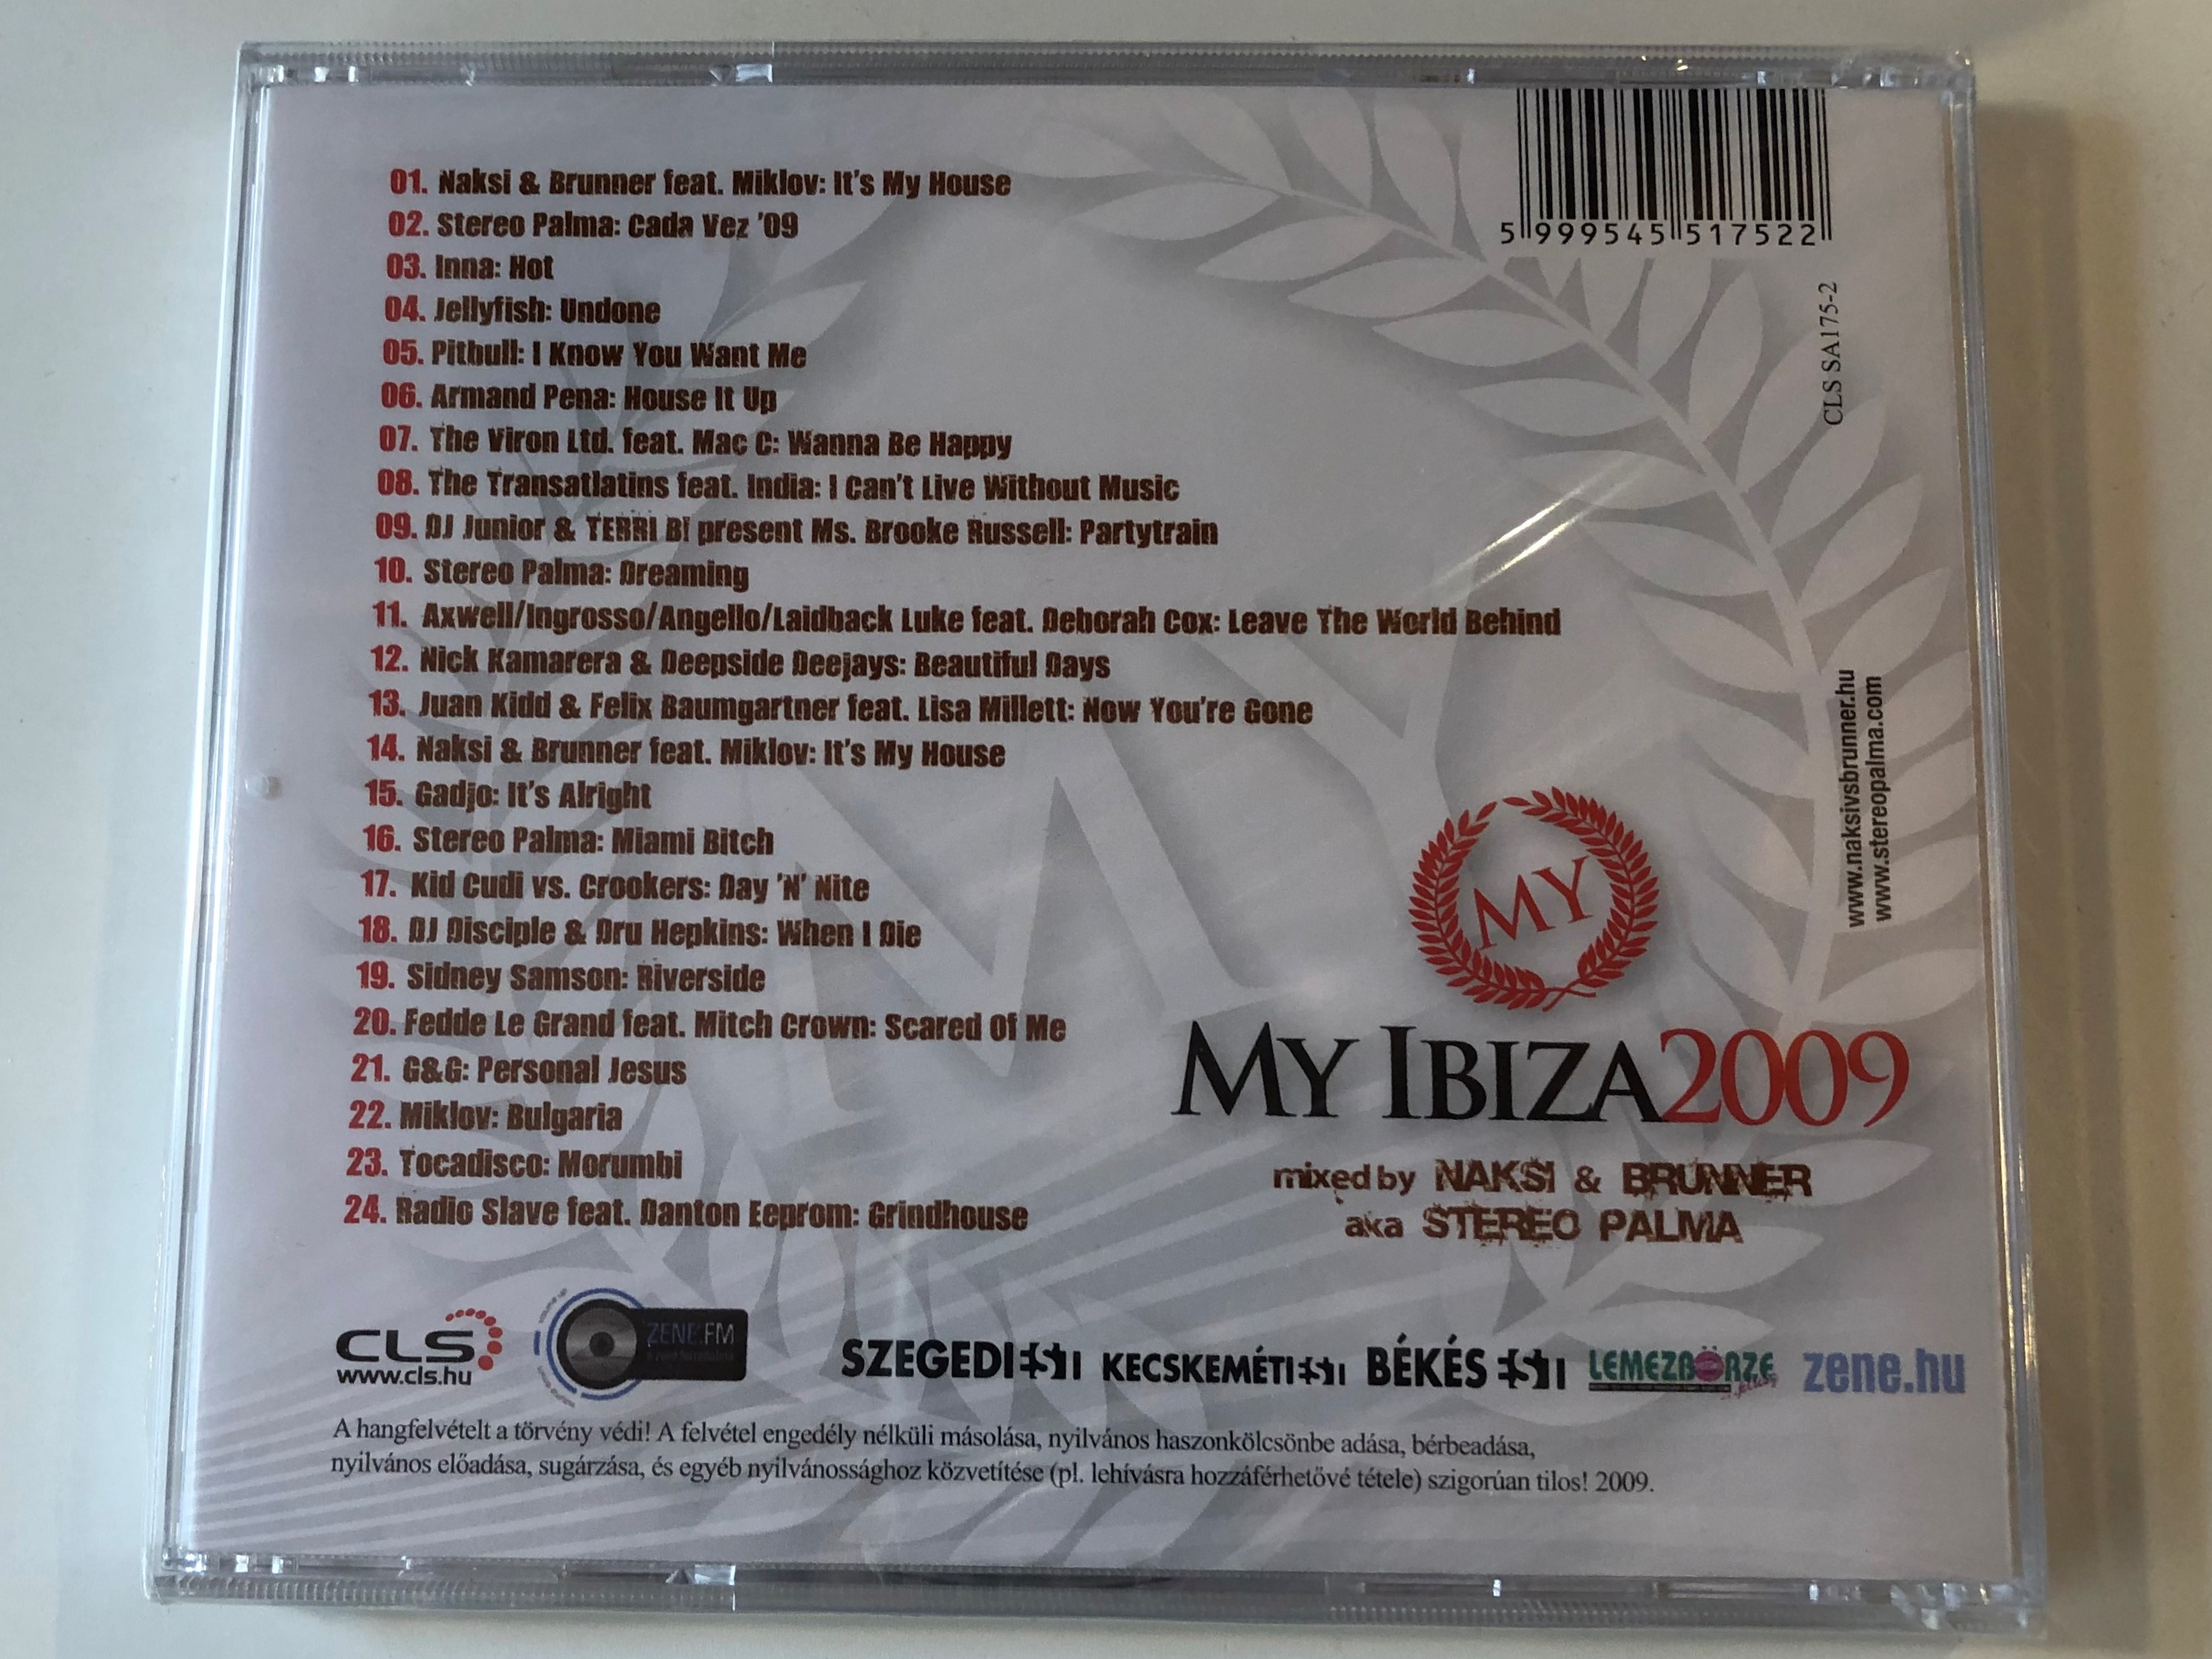 my-ibiza-2009-mixed-by-n-ksi-brunner-aka-stereo-palma-stereo-palma-inna-g-g-tocadisco-sidney-samson-radio-slave-kid-cudi-pitbull-cls-audio-cd-2009-cls-sa175-2-2-.jpg